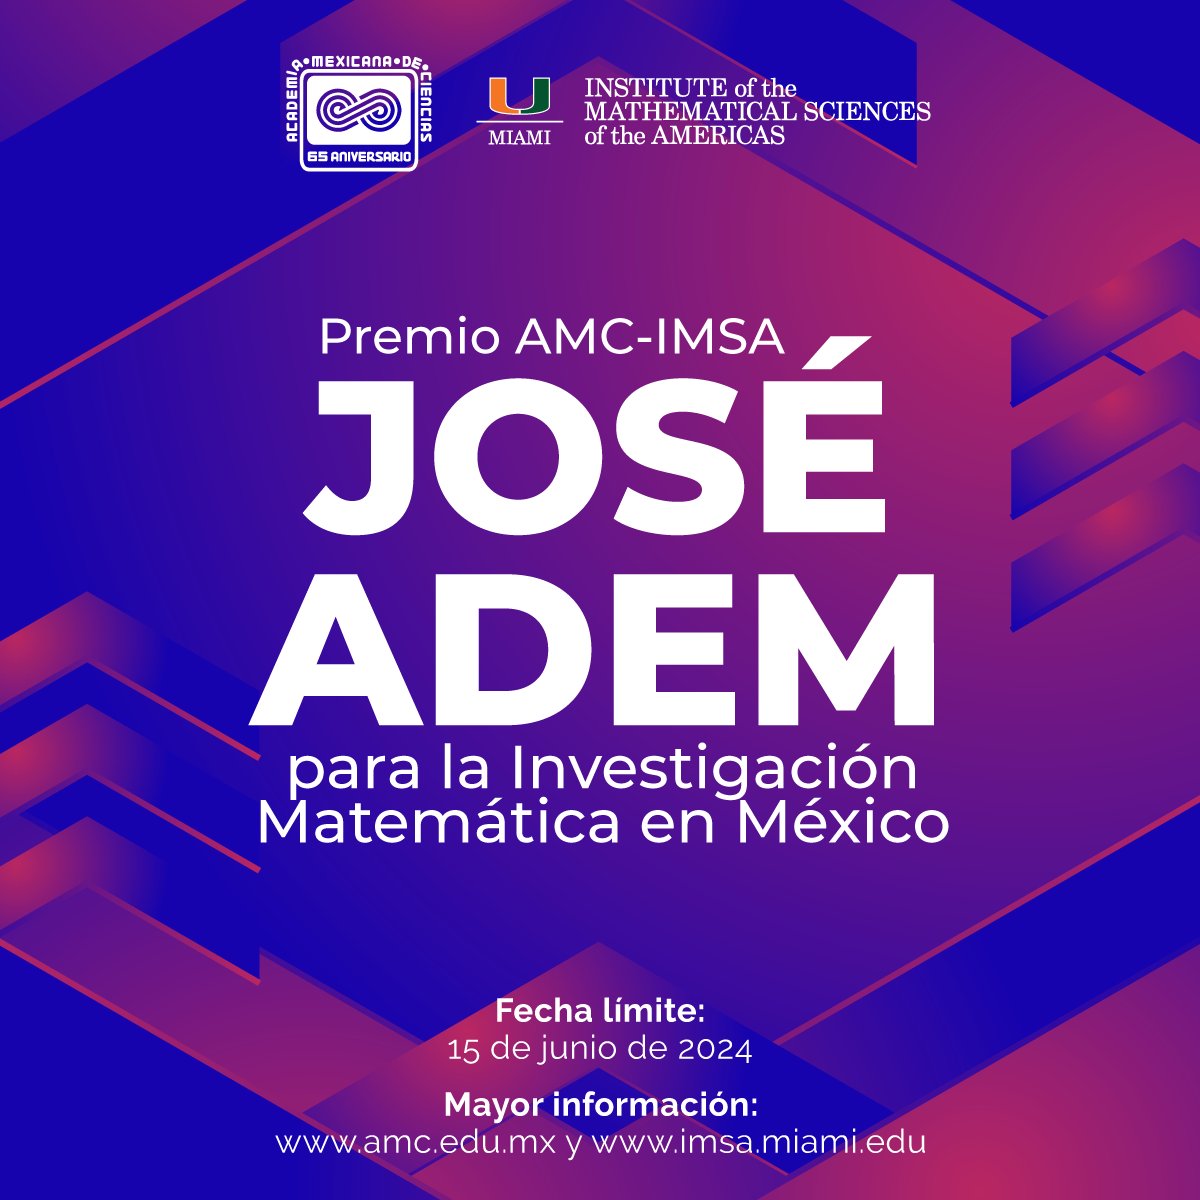 La #AMCiencias en conjunto con el Instituto de Ciencias Matemáticas de las Américas convocan al Premio AMC-IMSA José Adem para la Investigación Matemática en México. 🔴 Consulta las bases: bit.ly/PremioJoseAdem…